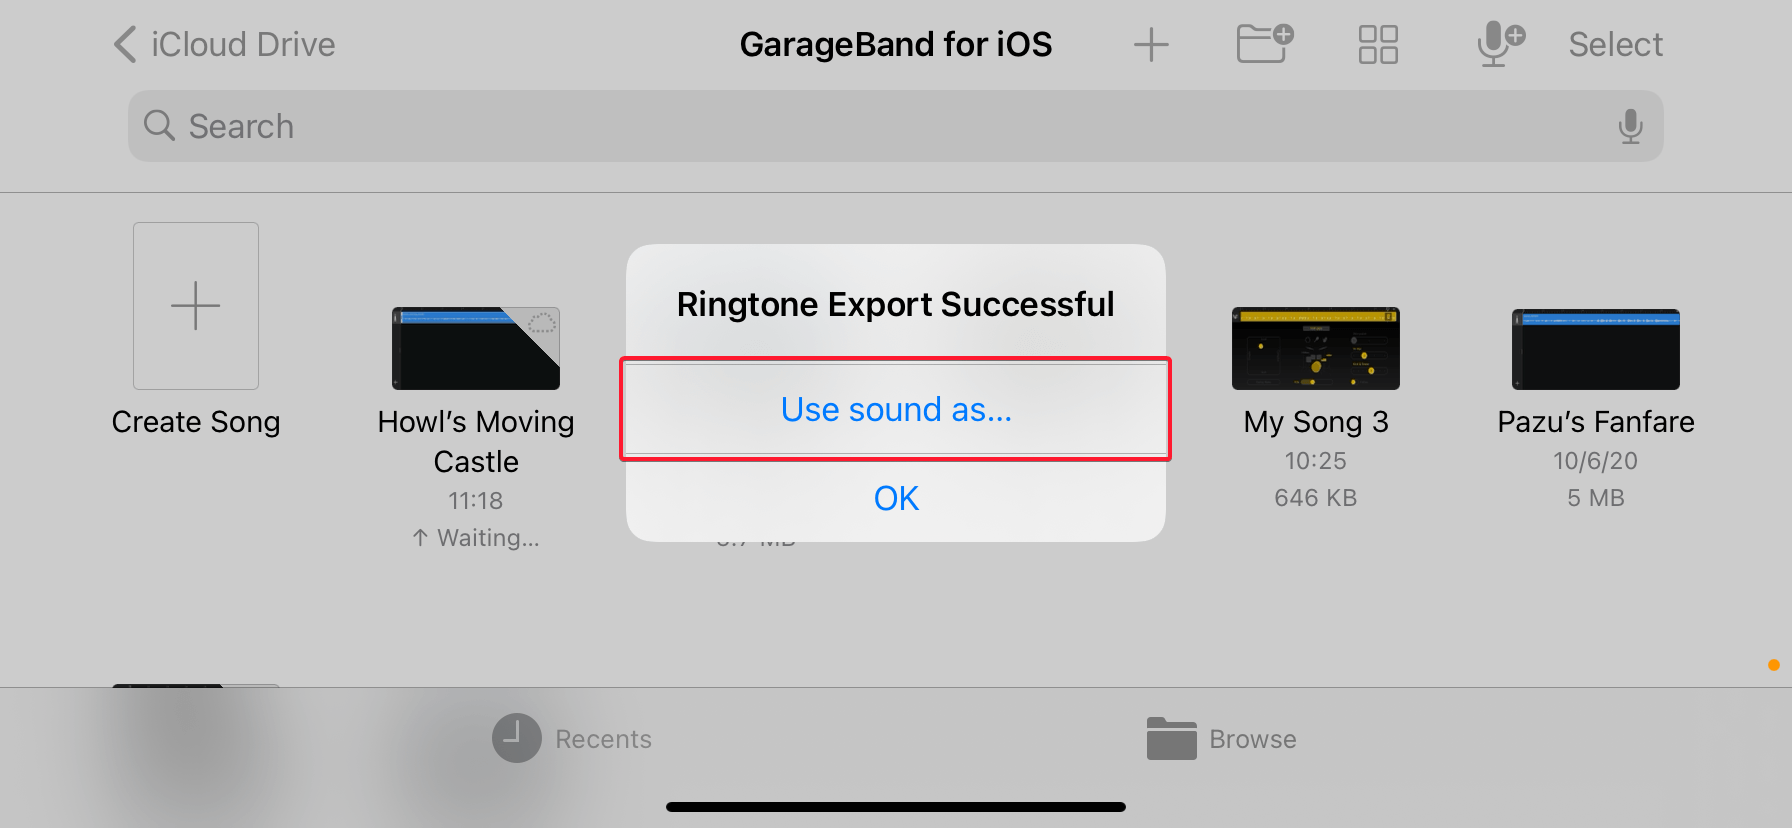 Ringtone Export Successful